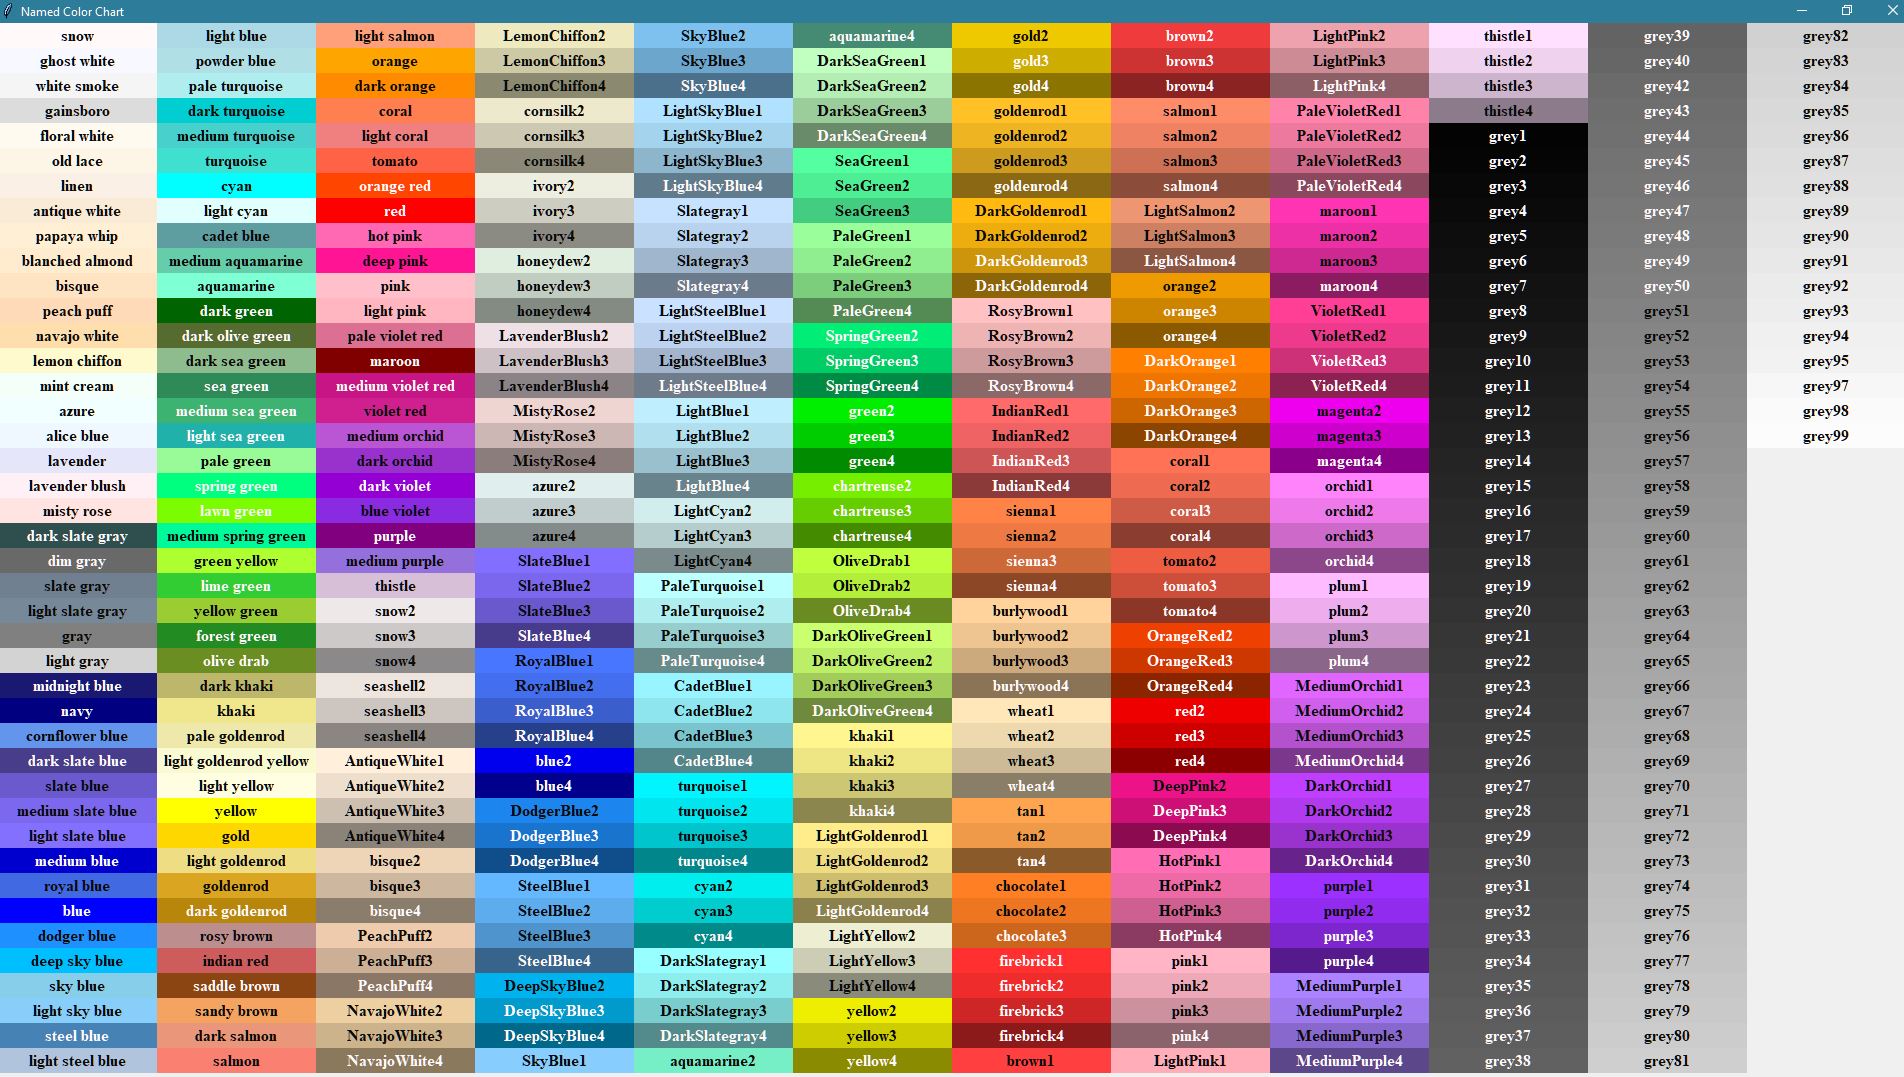 Цветной список